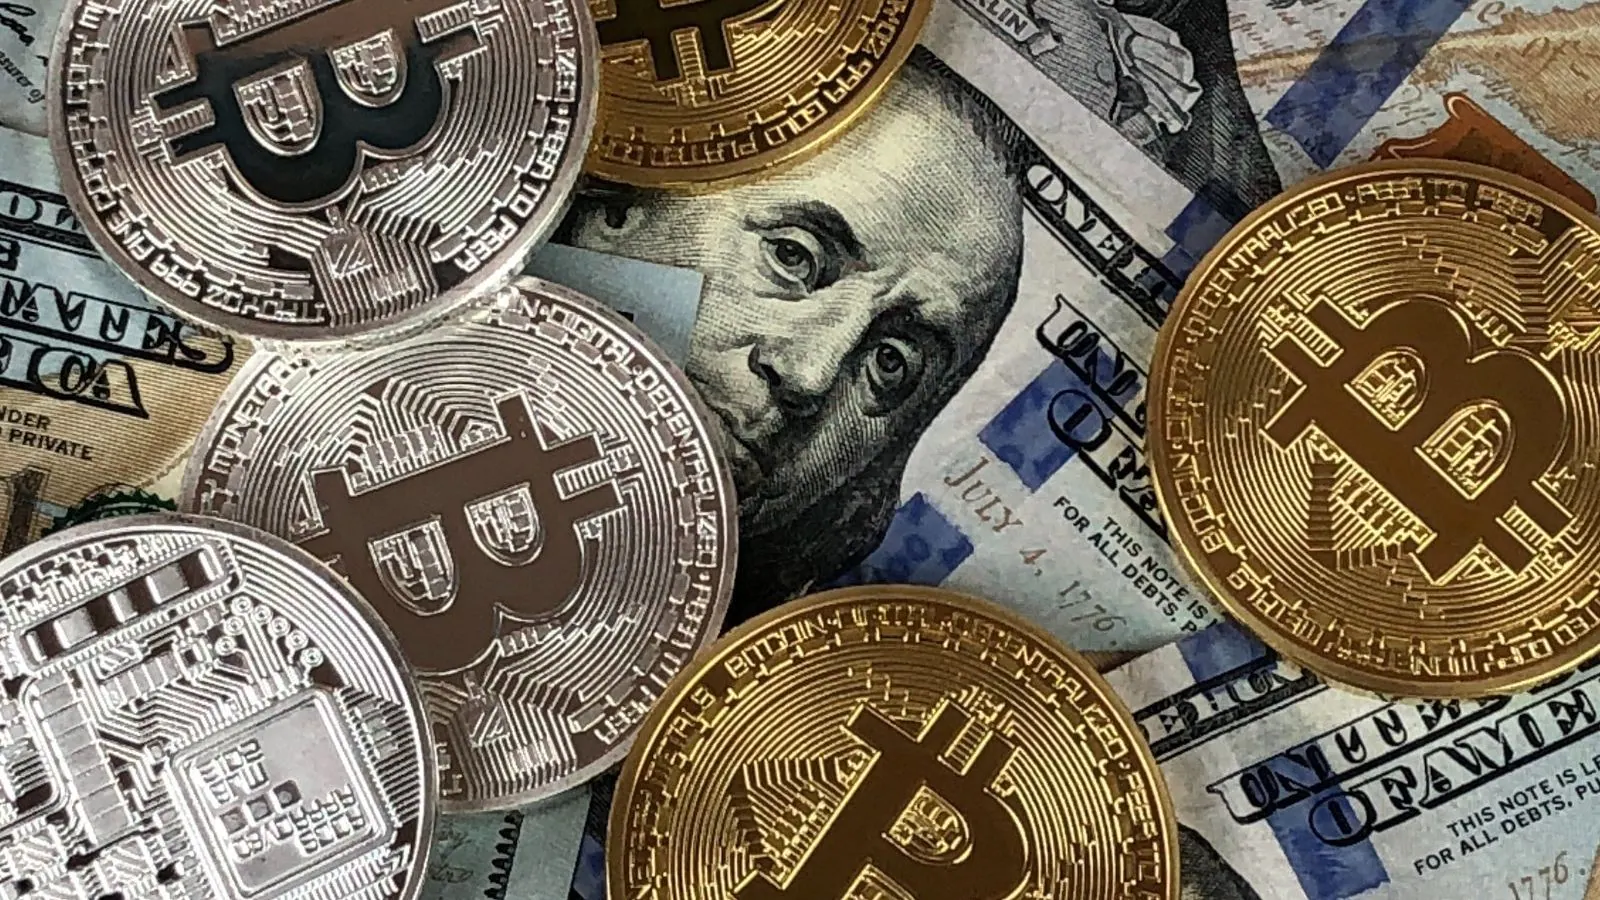 El destino del mercado de criptomonedas está en duda: cada vez más países prohíben la minería de Bitcoin debido a problemas con la electricidad